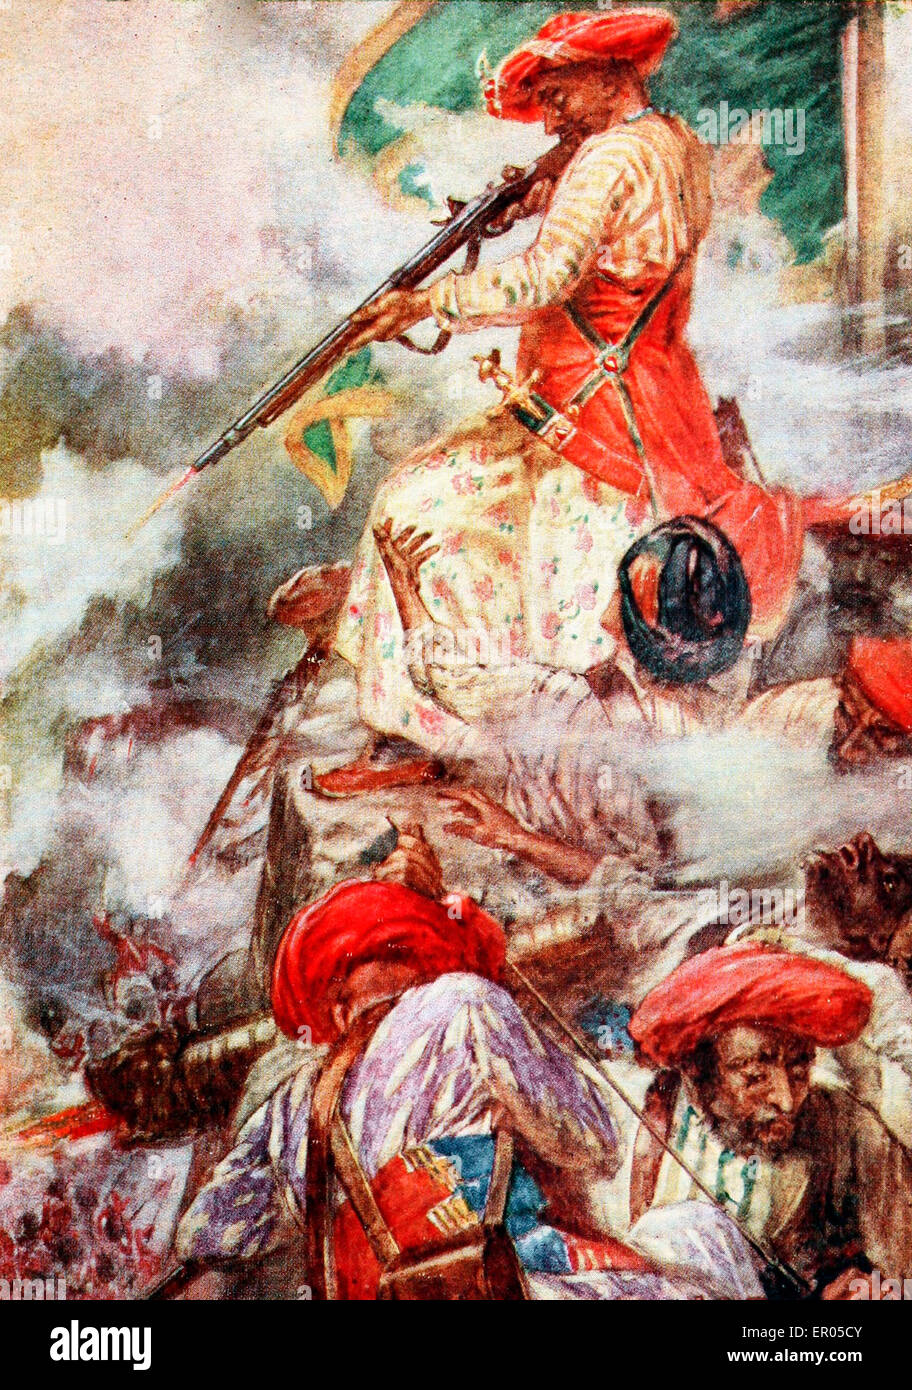 Tipu Sultan konfrontiert seine Gegner während der Belagerung von Srirangapatna - Tipu selbst stand cooly an seinen vorrückenden Feind abfeuern Stockfoto